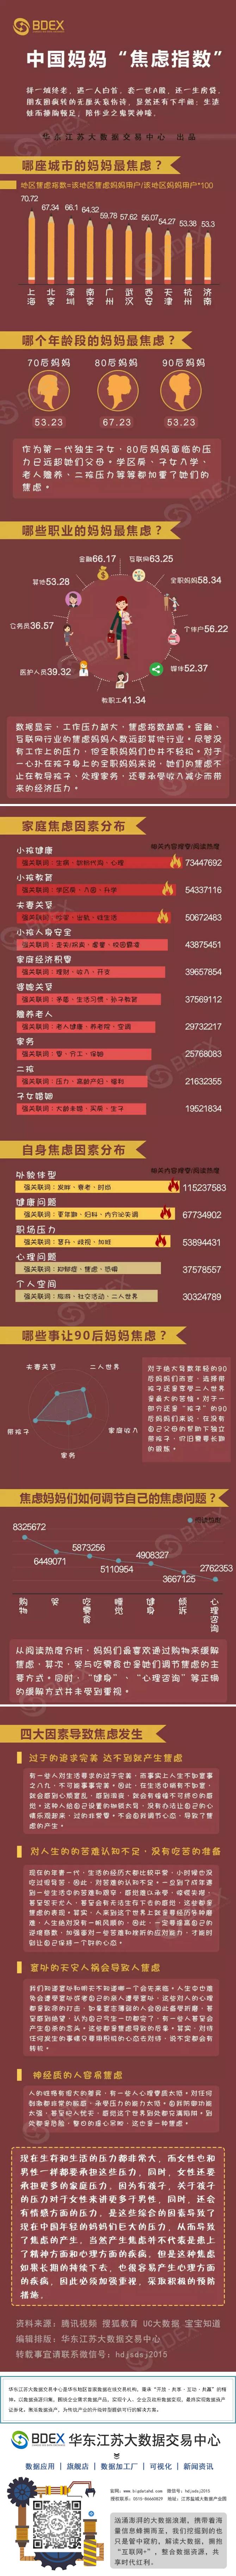 中国妈妈“焦虑指数”报告.png